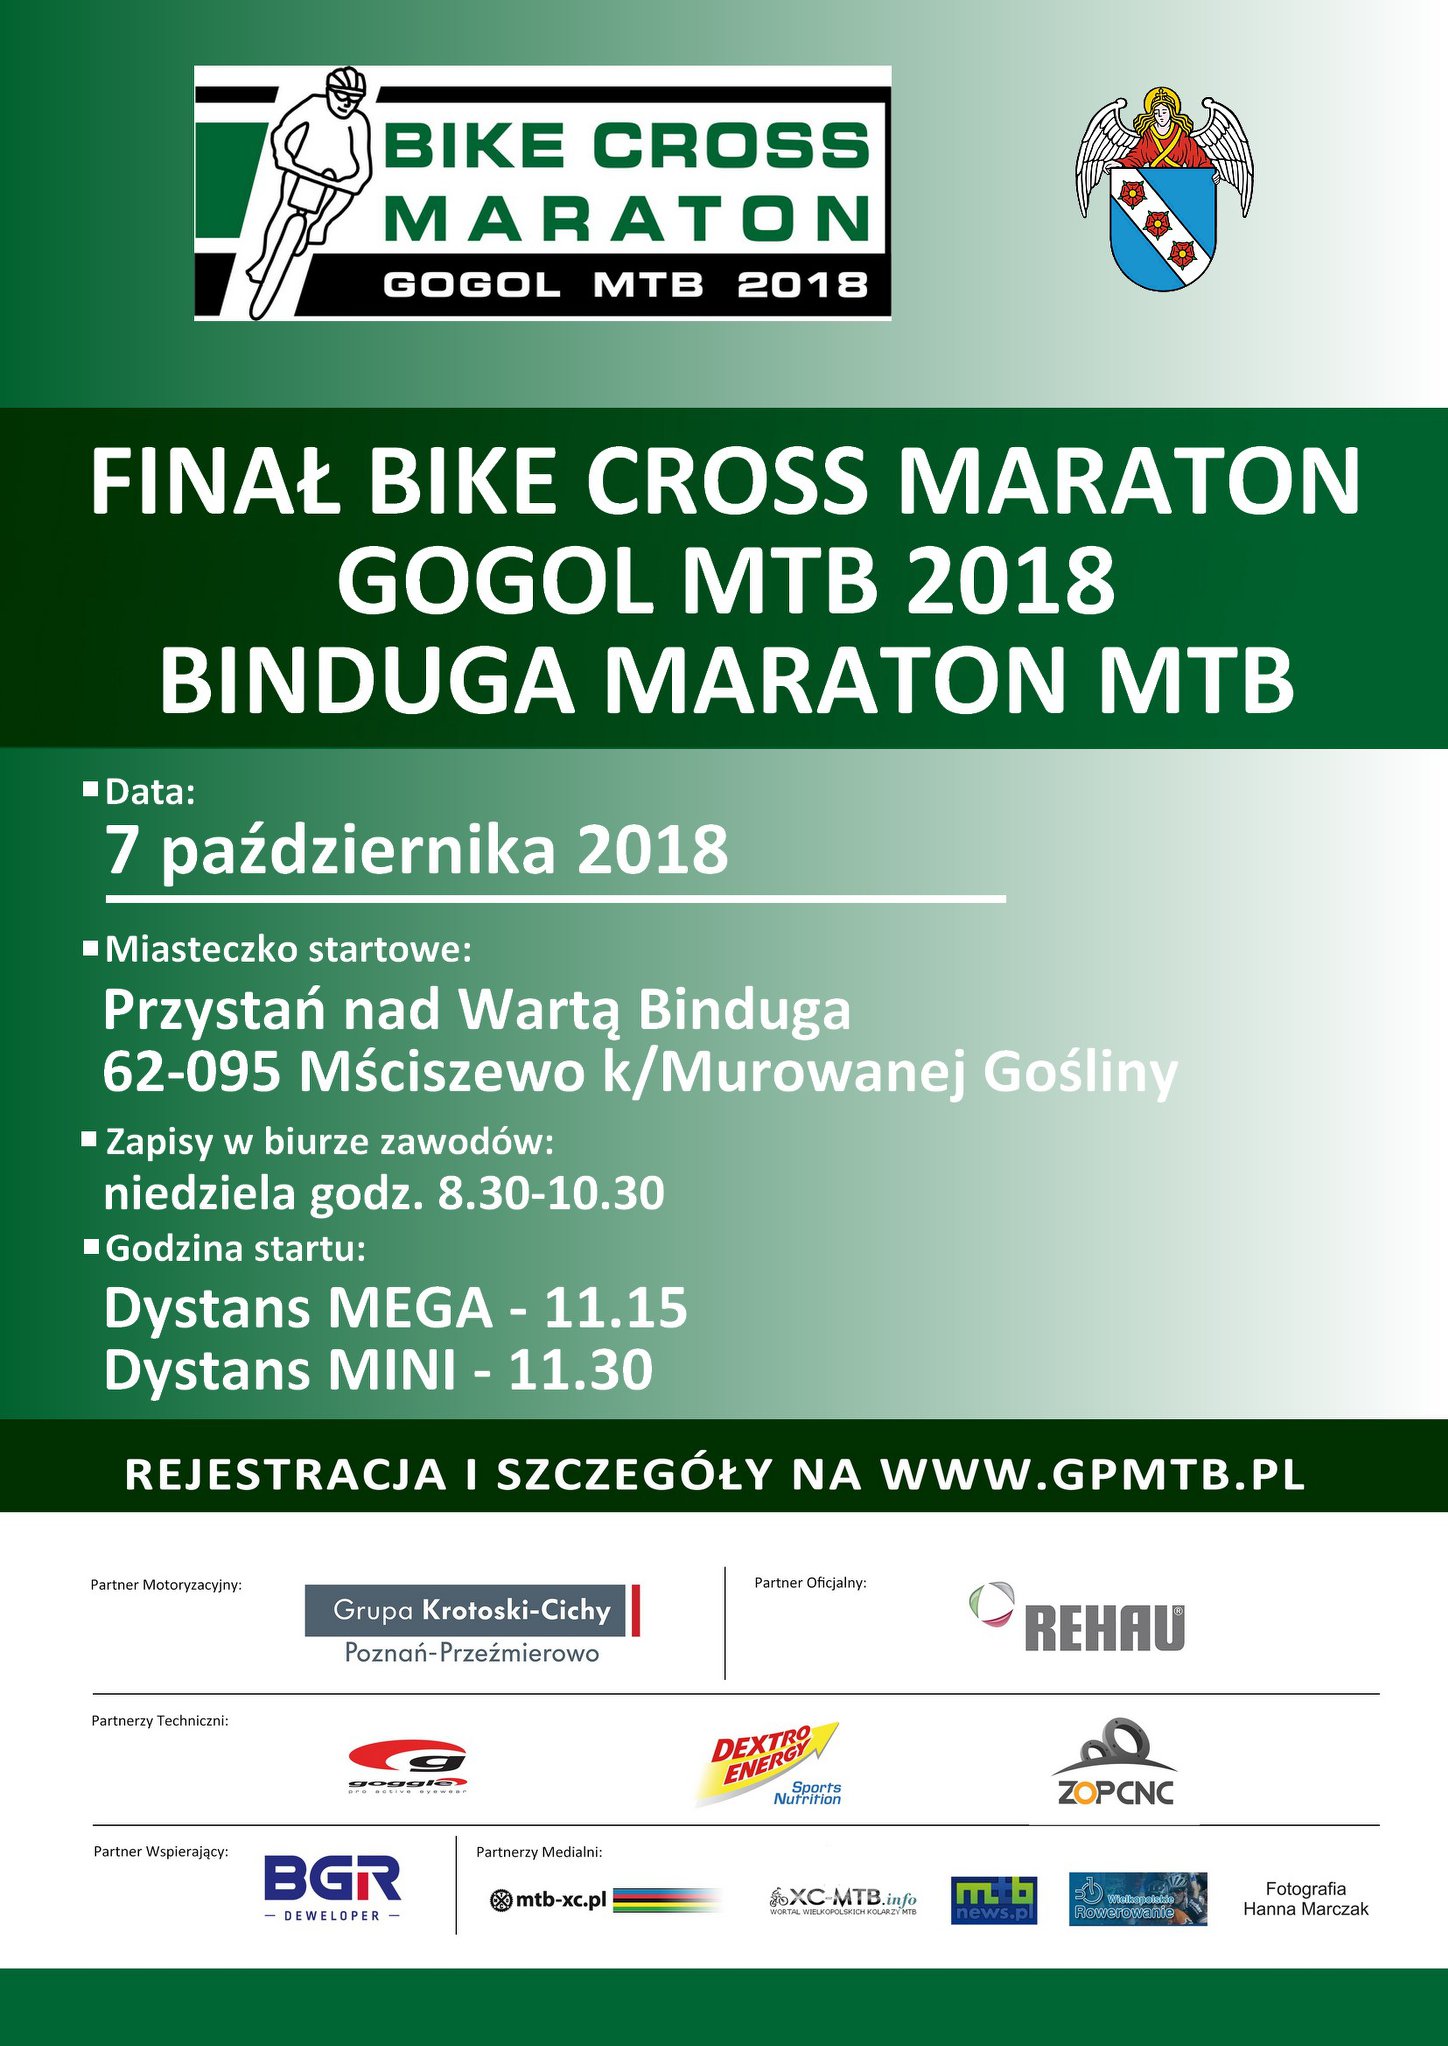 Binduga MTB Maraton